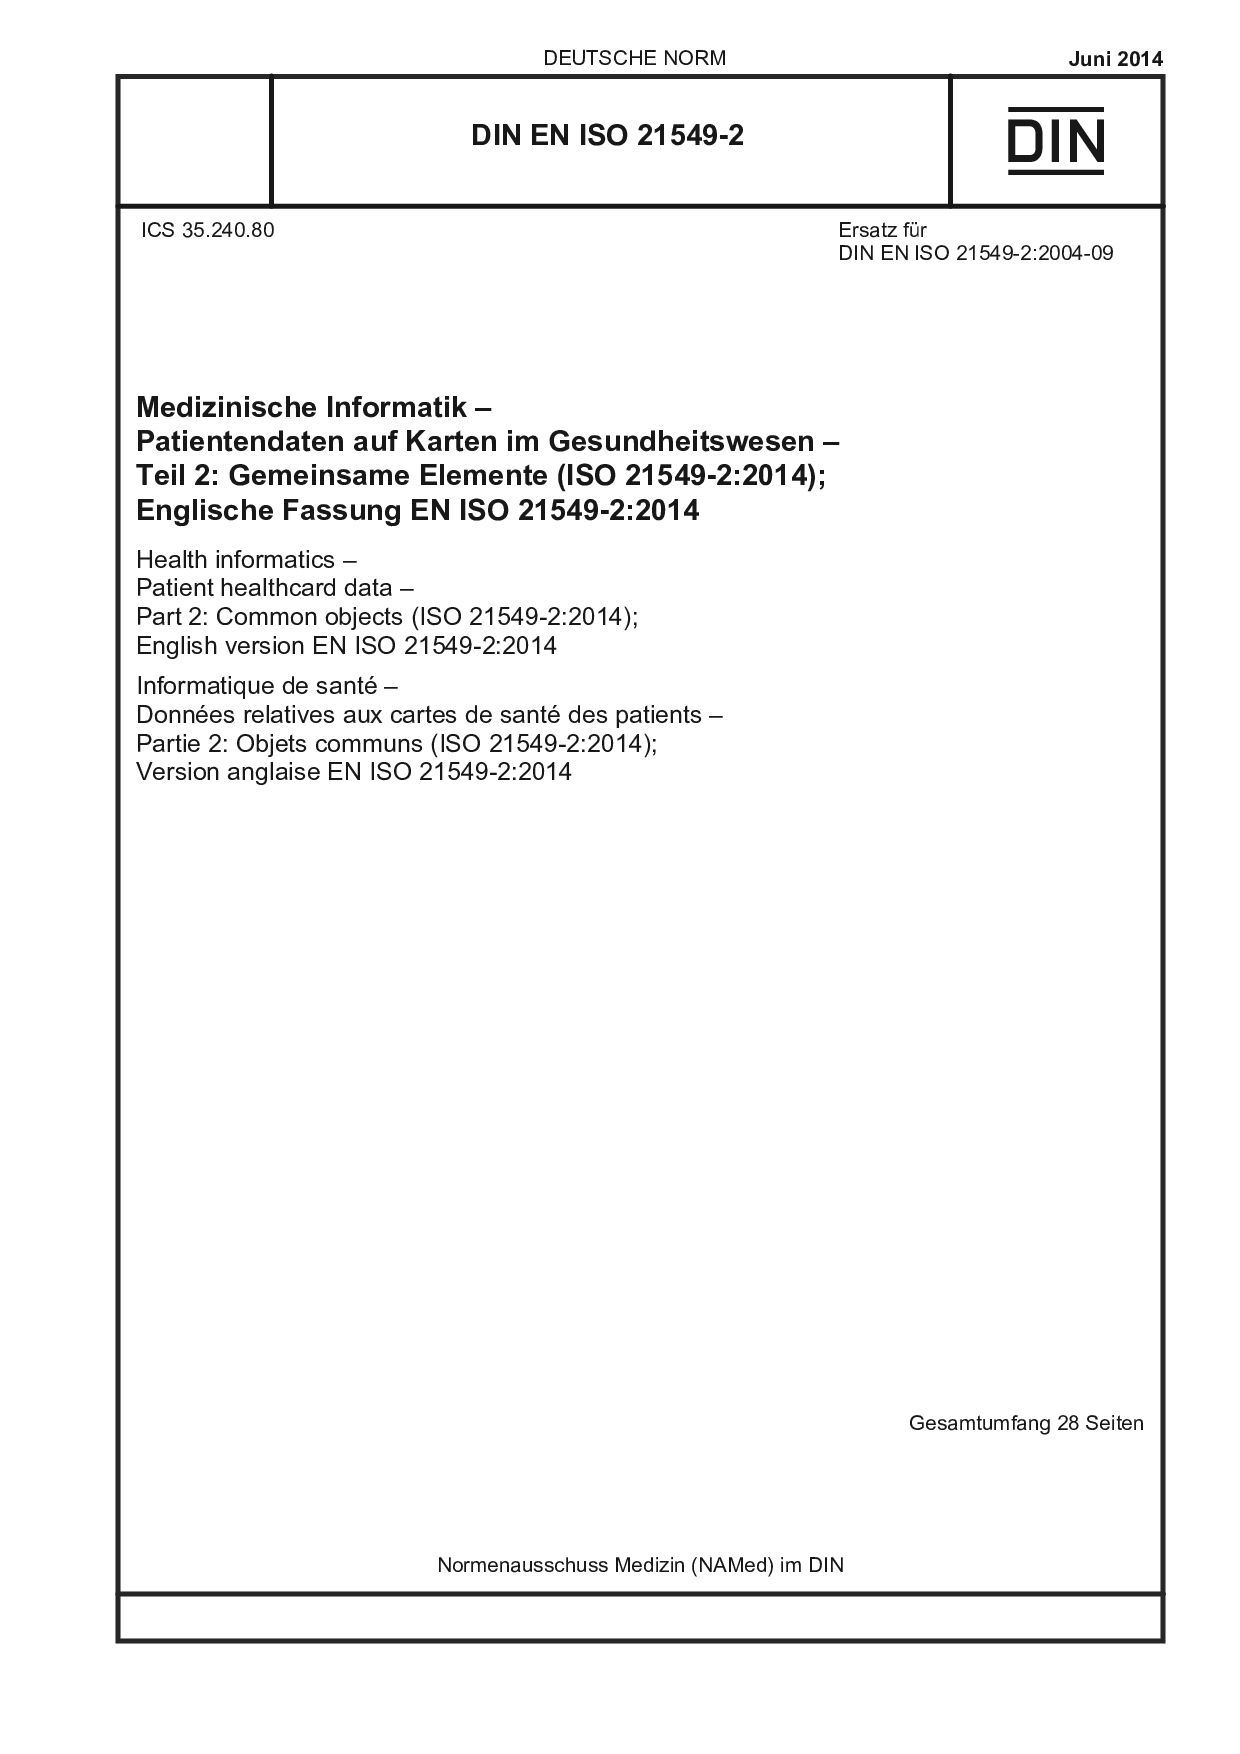 DIN EN ISO 21549-2:2014封面图